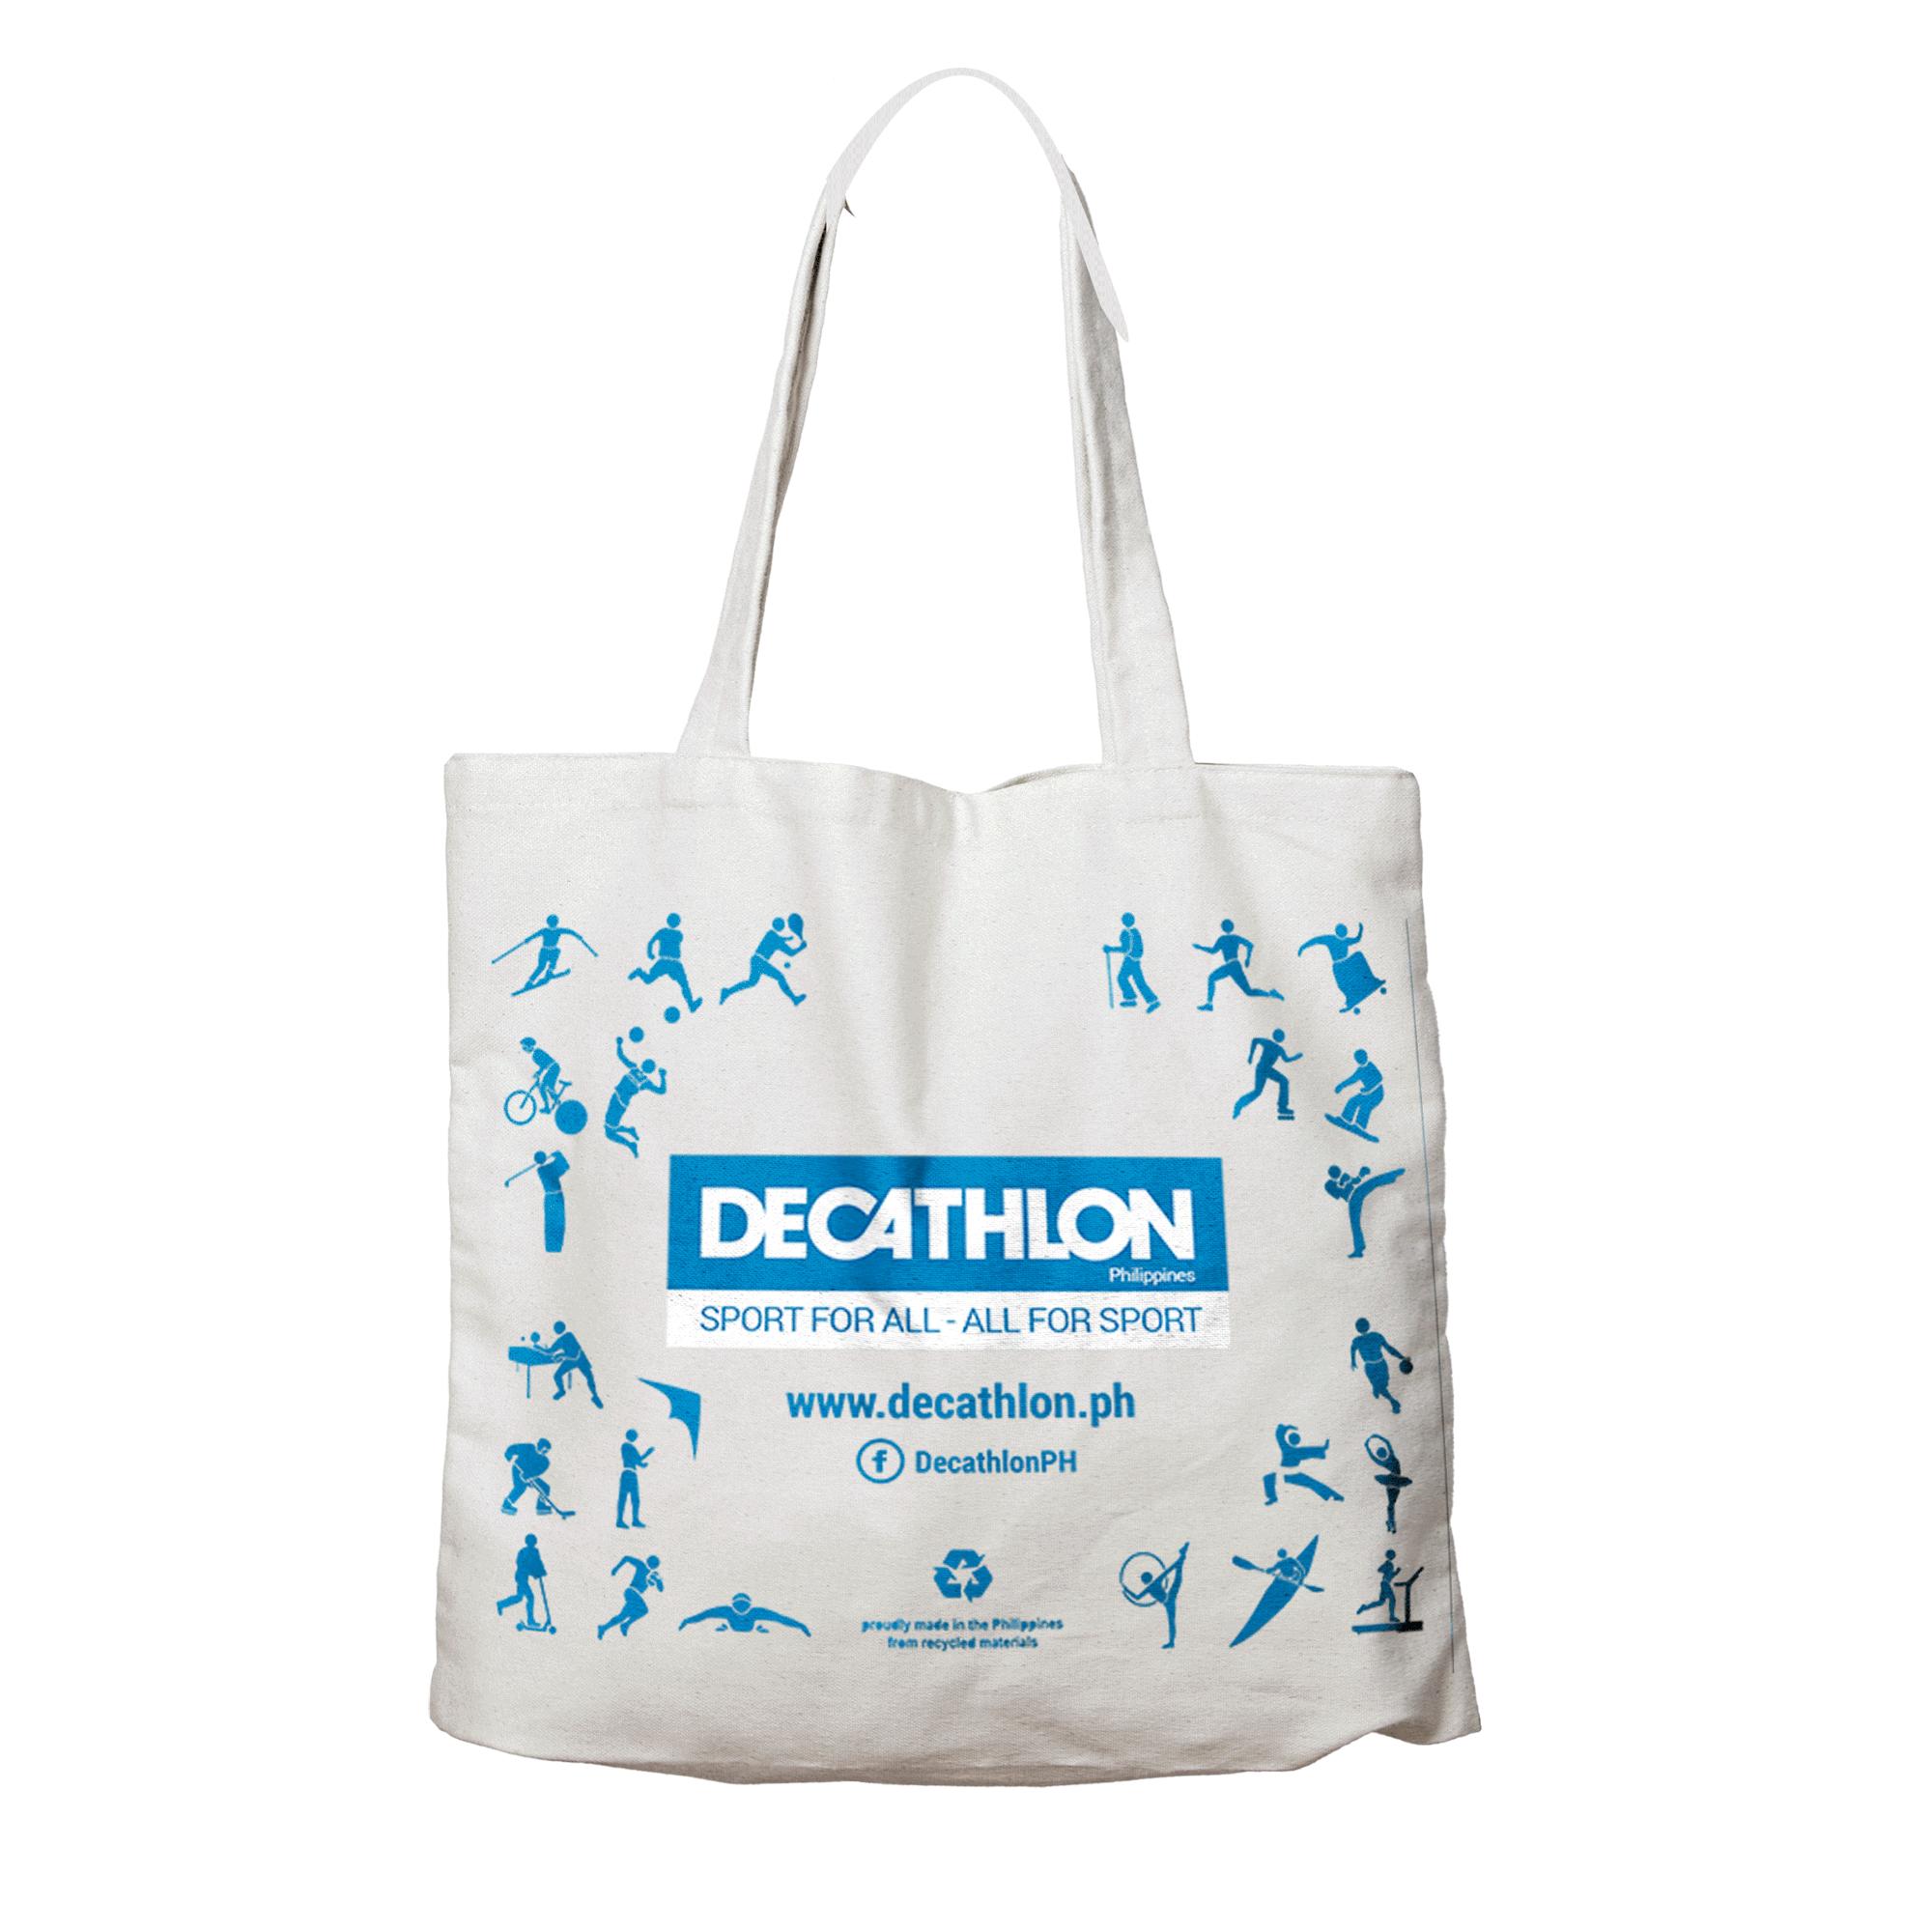 decathlon ph bags